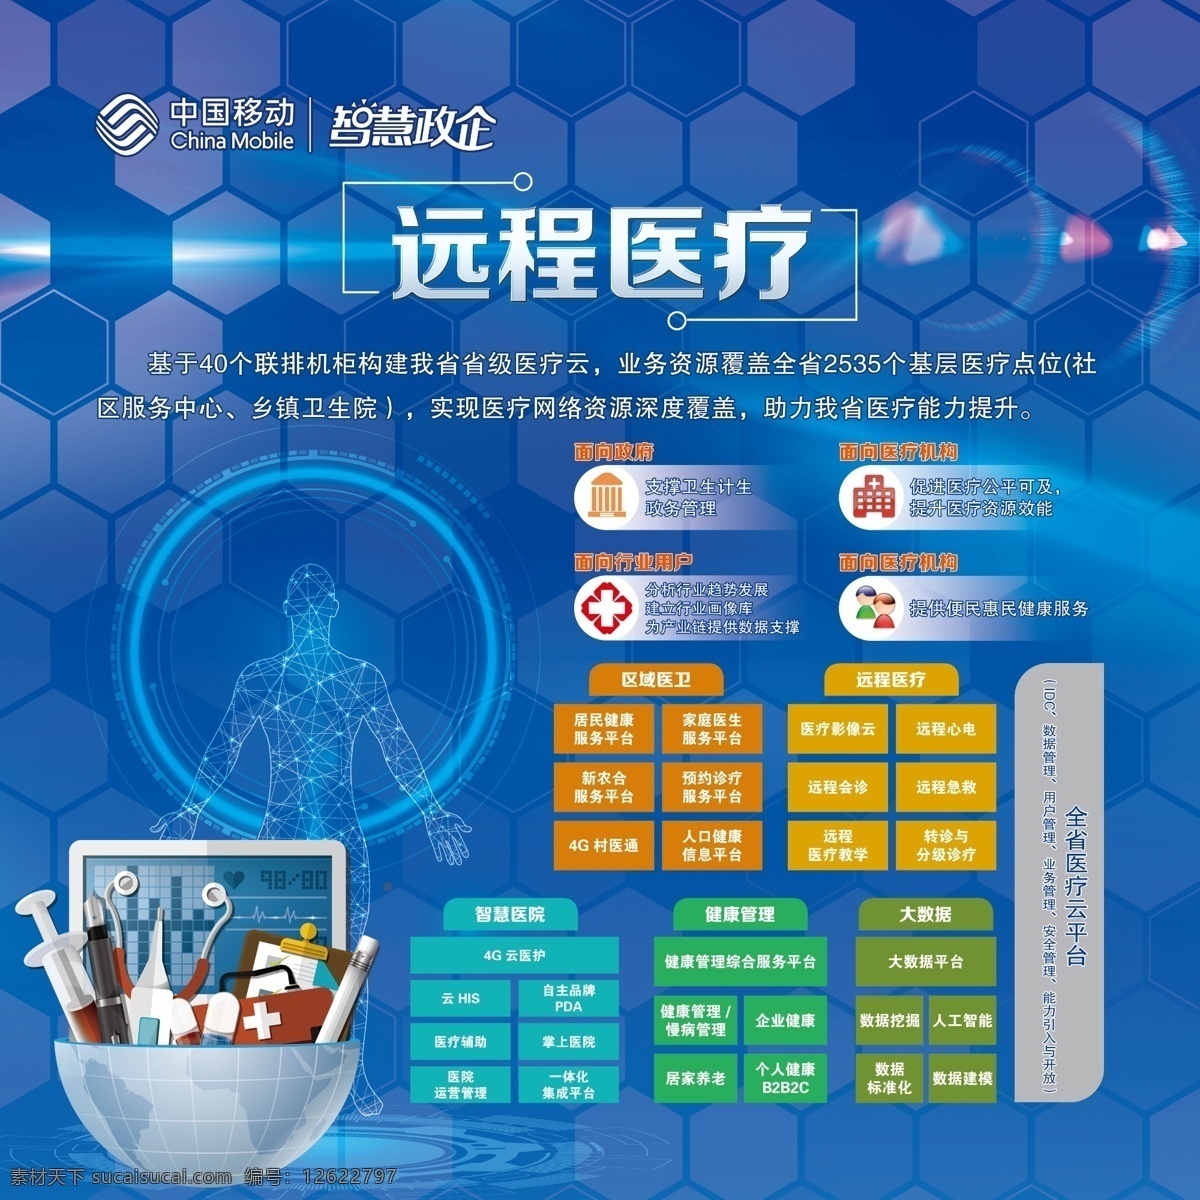 中国移动 智慧 政企 远程医疗 智慧政企 5g应用 智慧医疗 现代科技